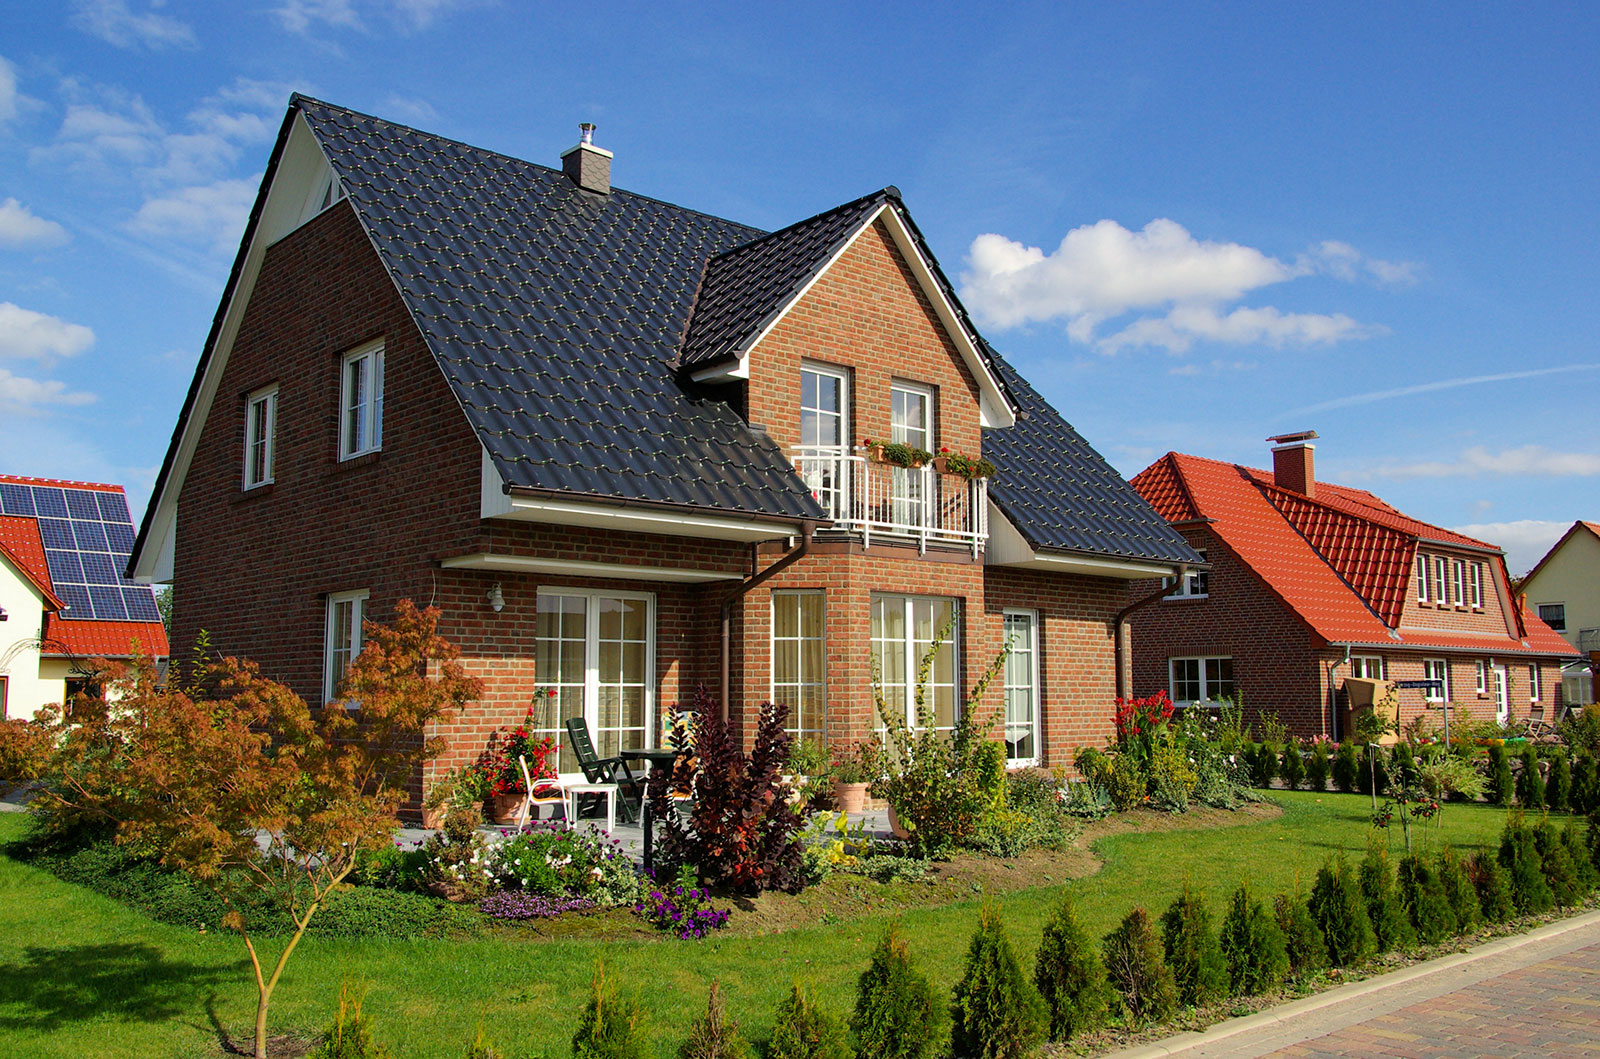 Profilbild der Firma Klinkerbau Tocke und Partner Gbr. Ein Einfamilienhaus mit rotbrauner Klinkerfassade und dunklem Dach.